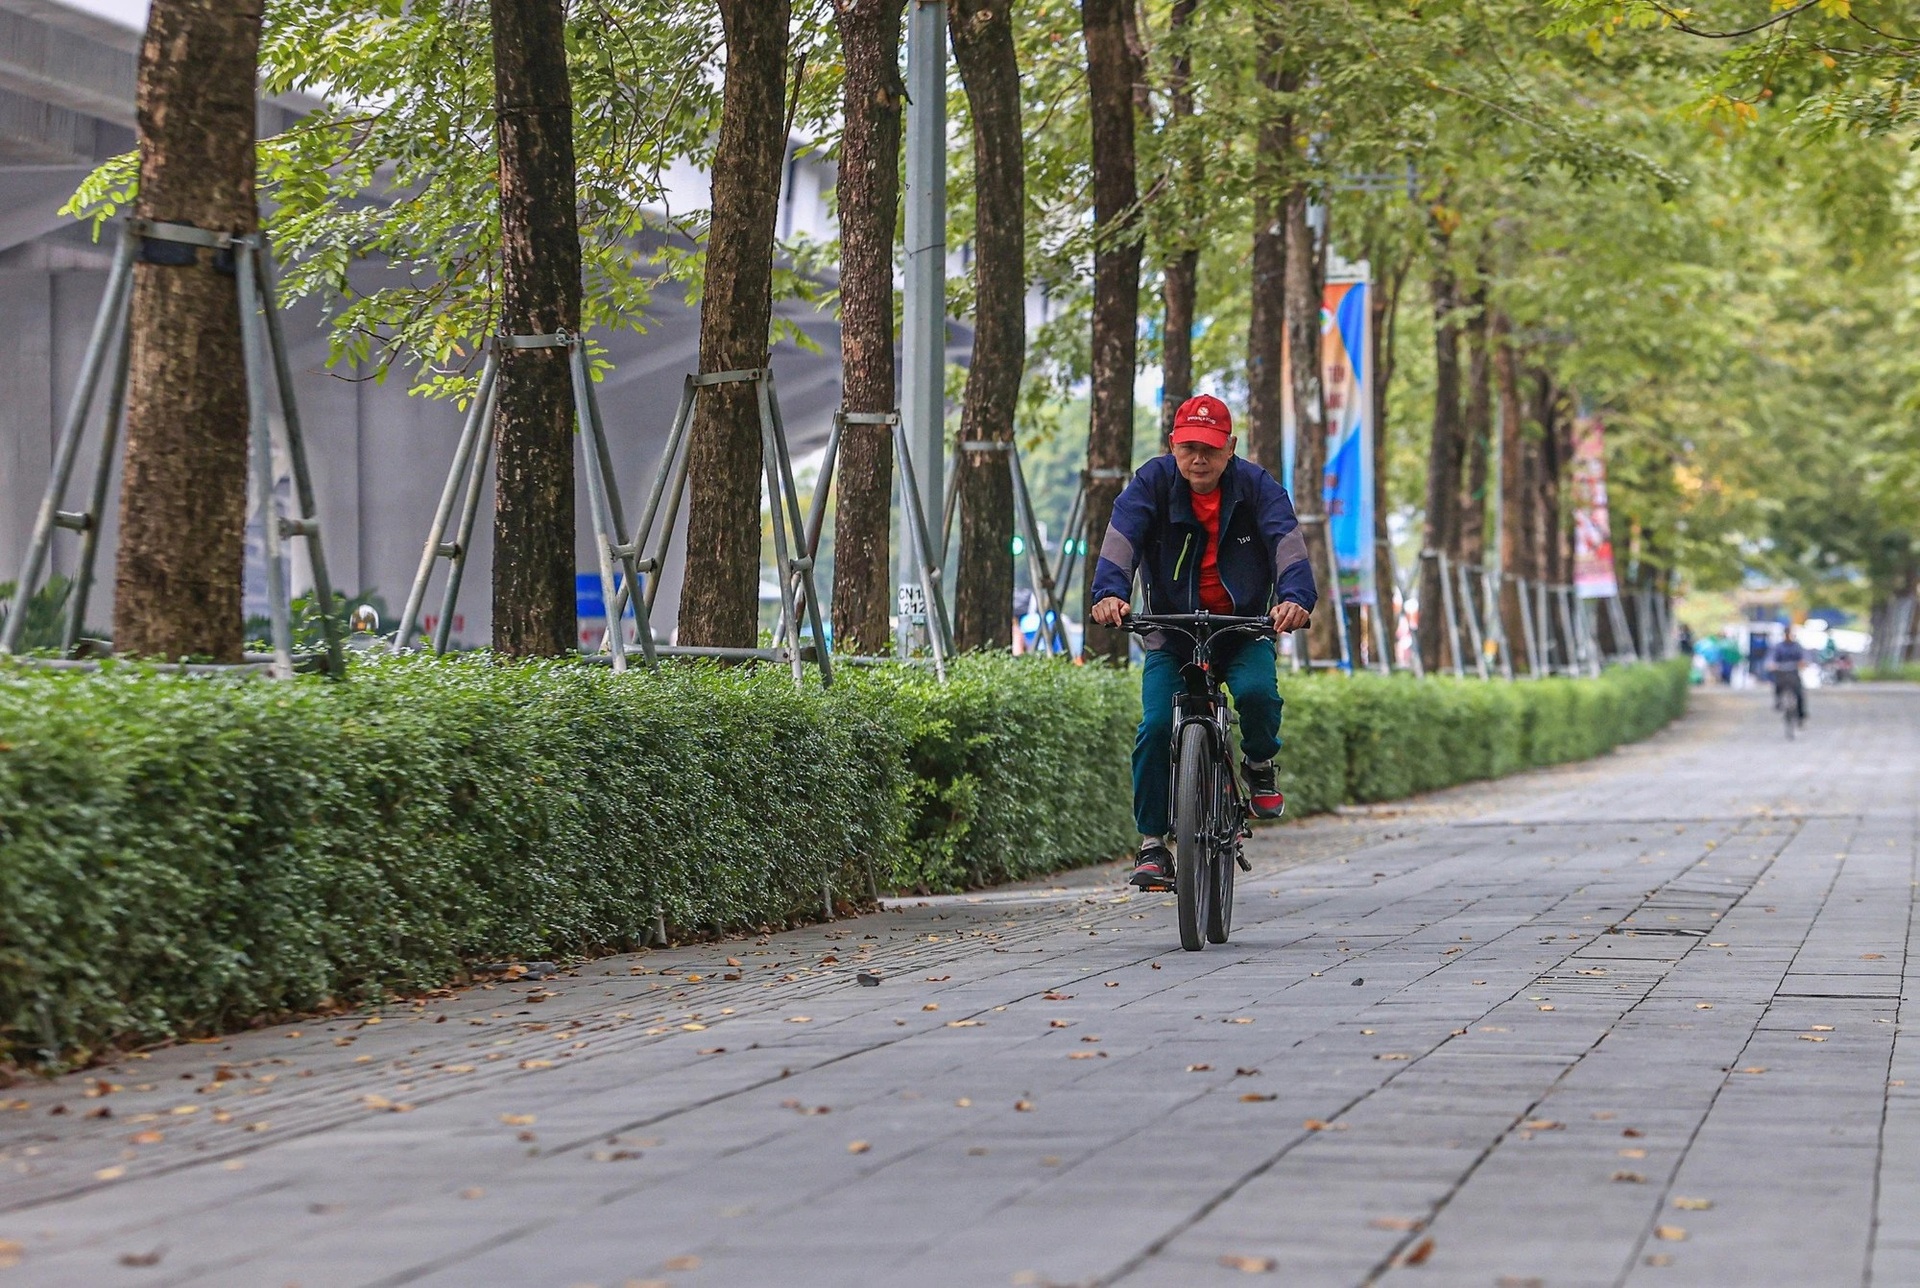 Sở GTVT đề xuất thí điểm làn đường riêng cho xe đạp dọc sông Tô Lịch và quanh công viên Hòa Bình, nhằm tạo điều kiện cho người dân sử dụng phương tiện công cộng và giảm ô nhiễm môi trường (Ảnh: Báo Giao thông)